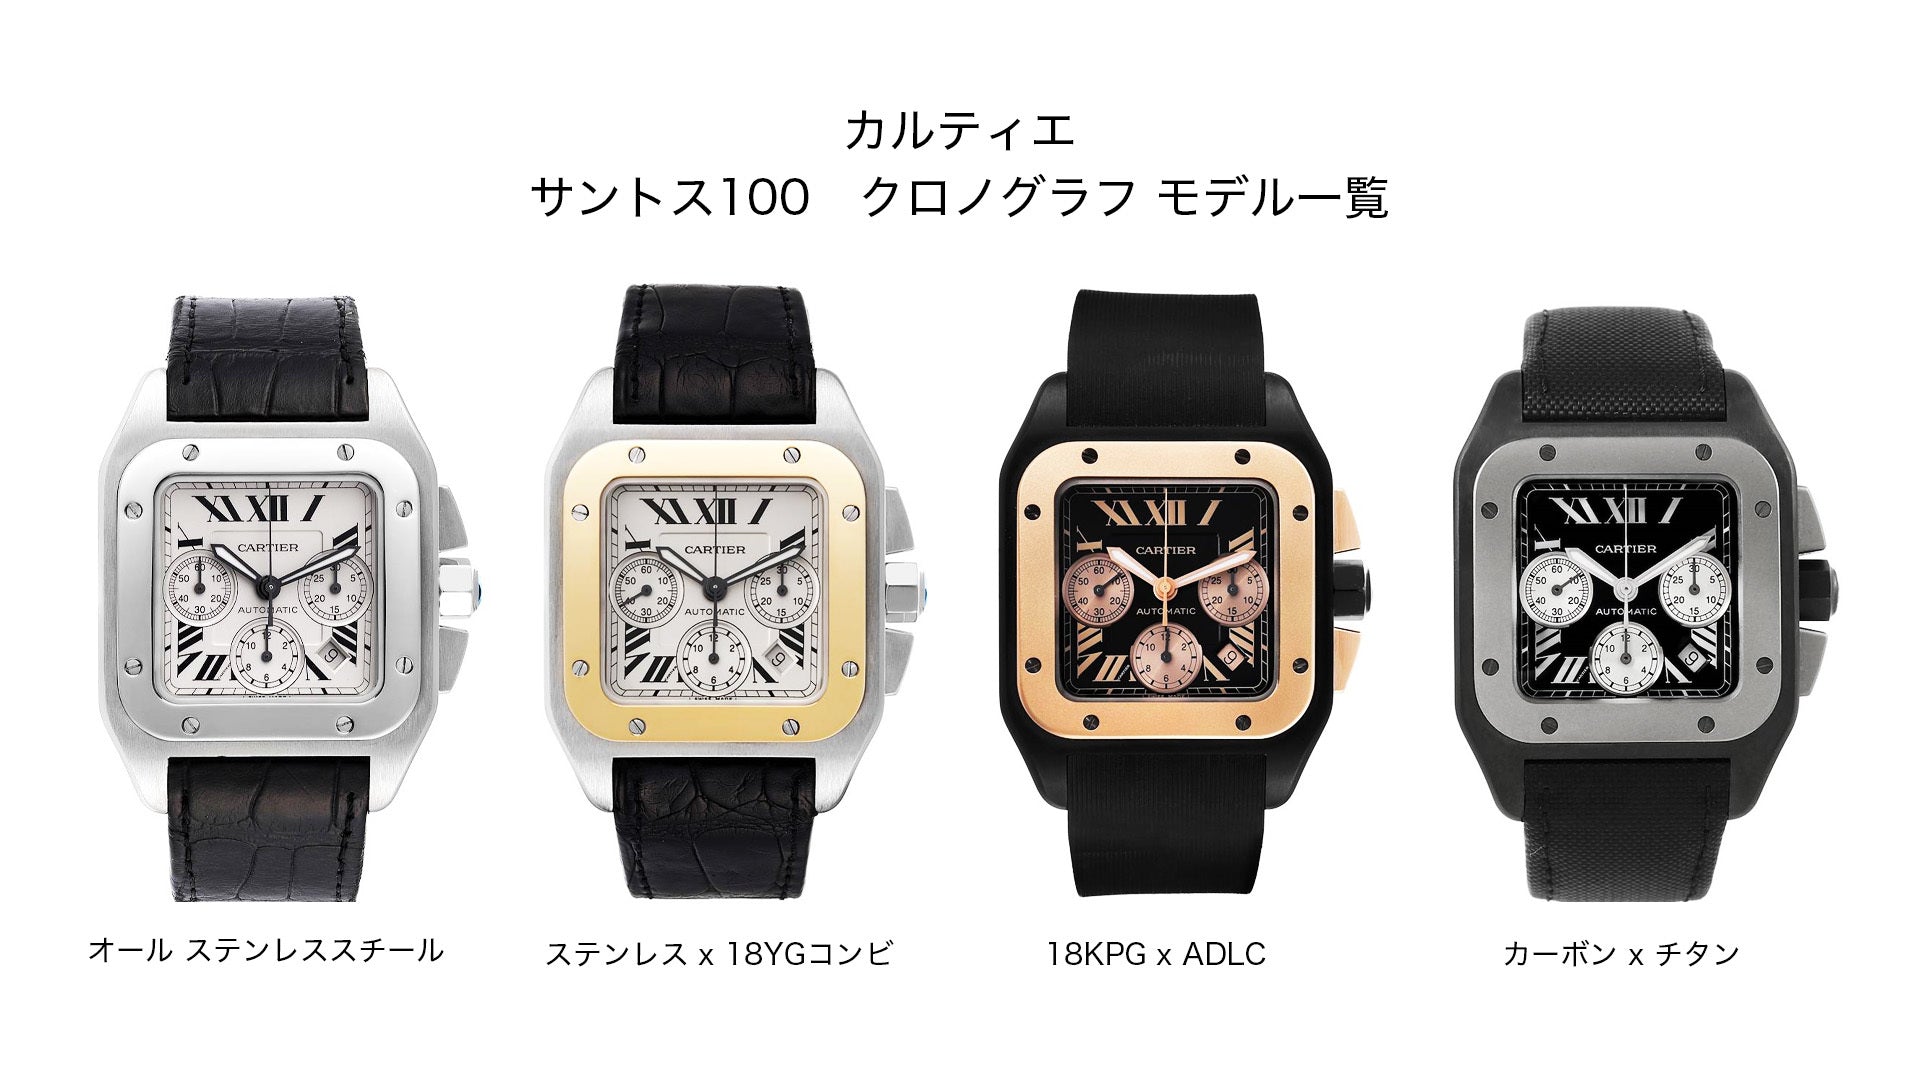 カルティエ腕時計『サントス100』クロノグラフモデル一覧